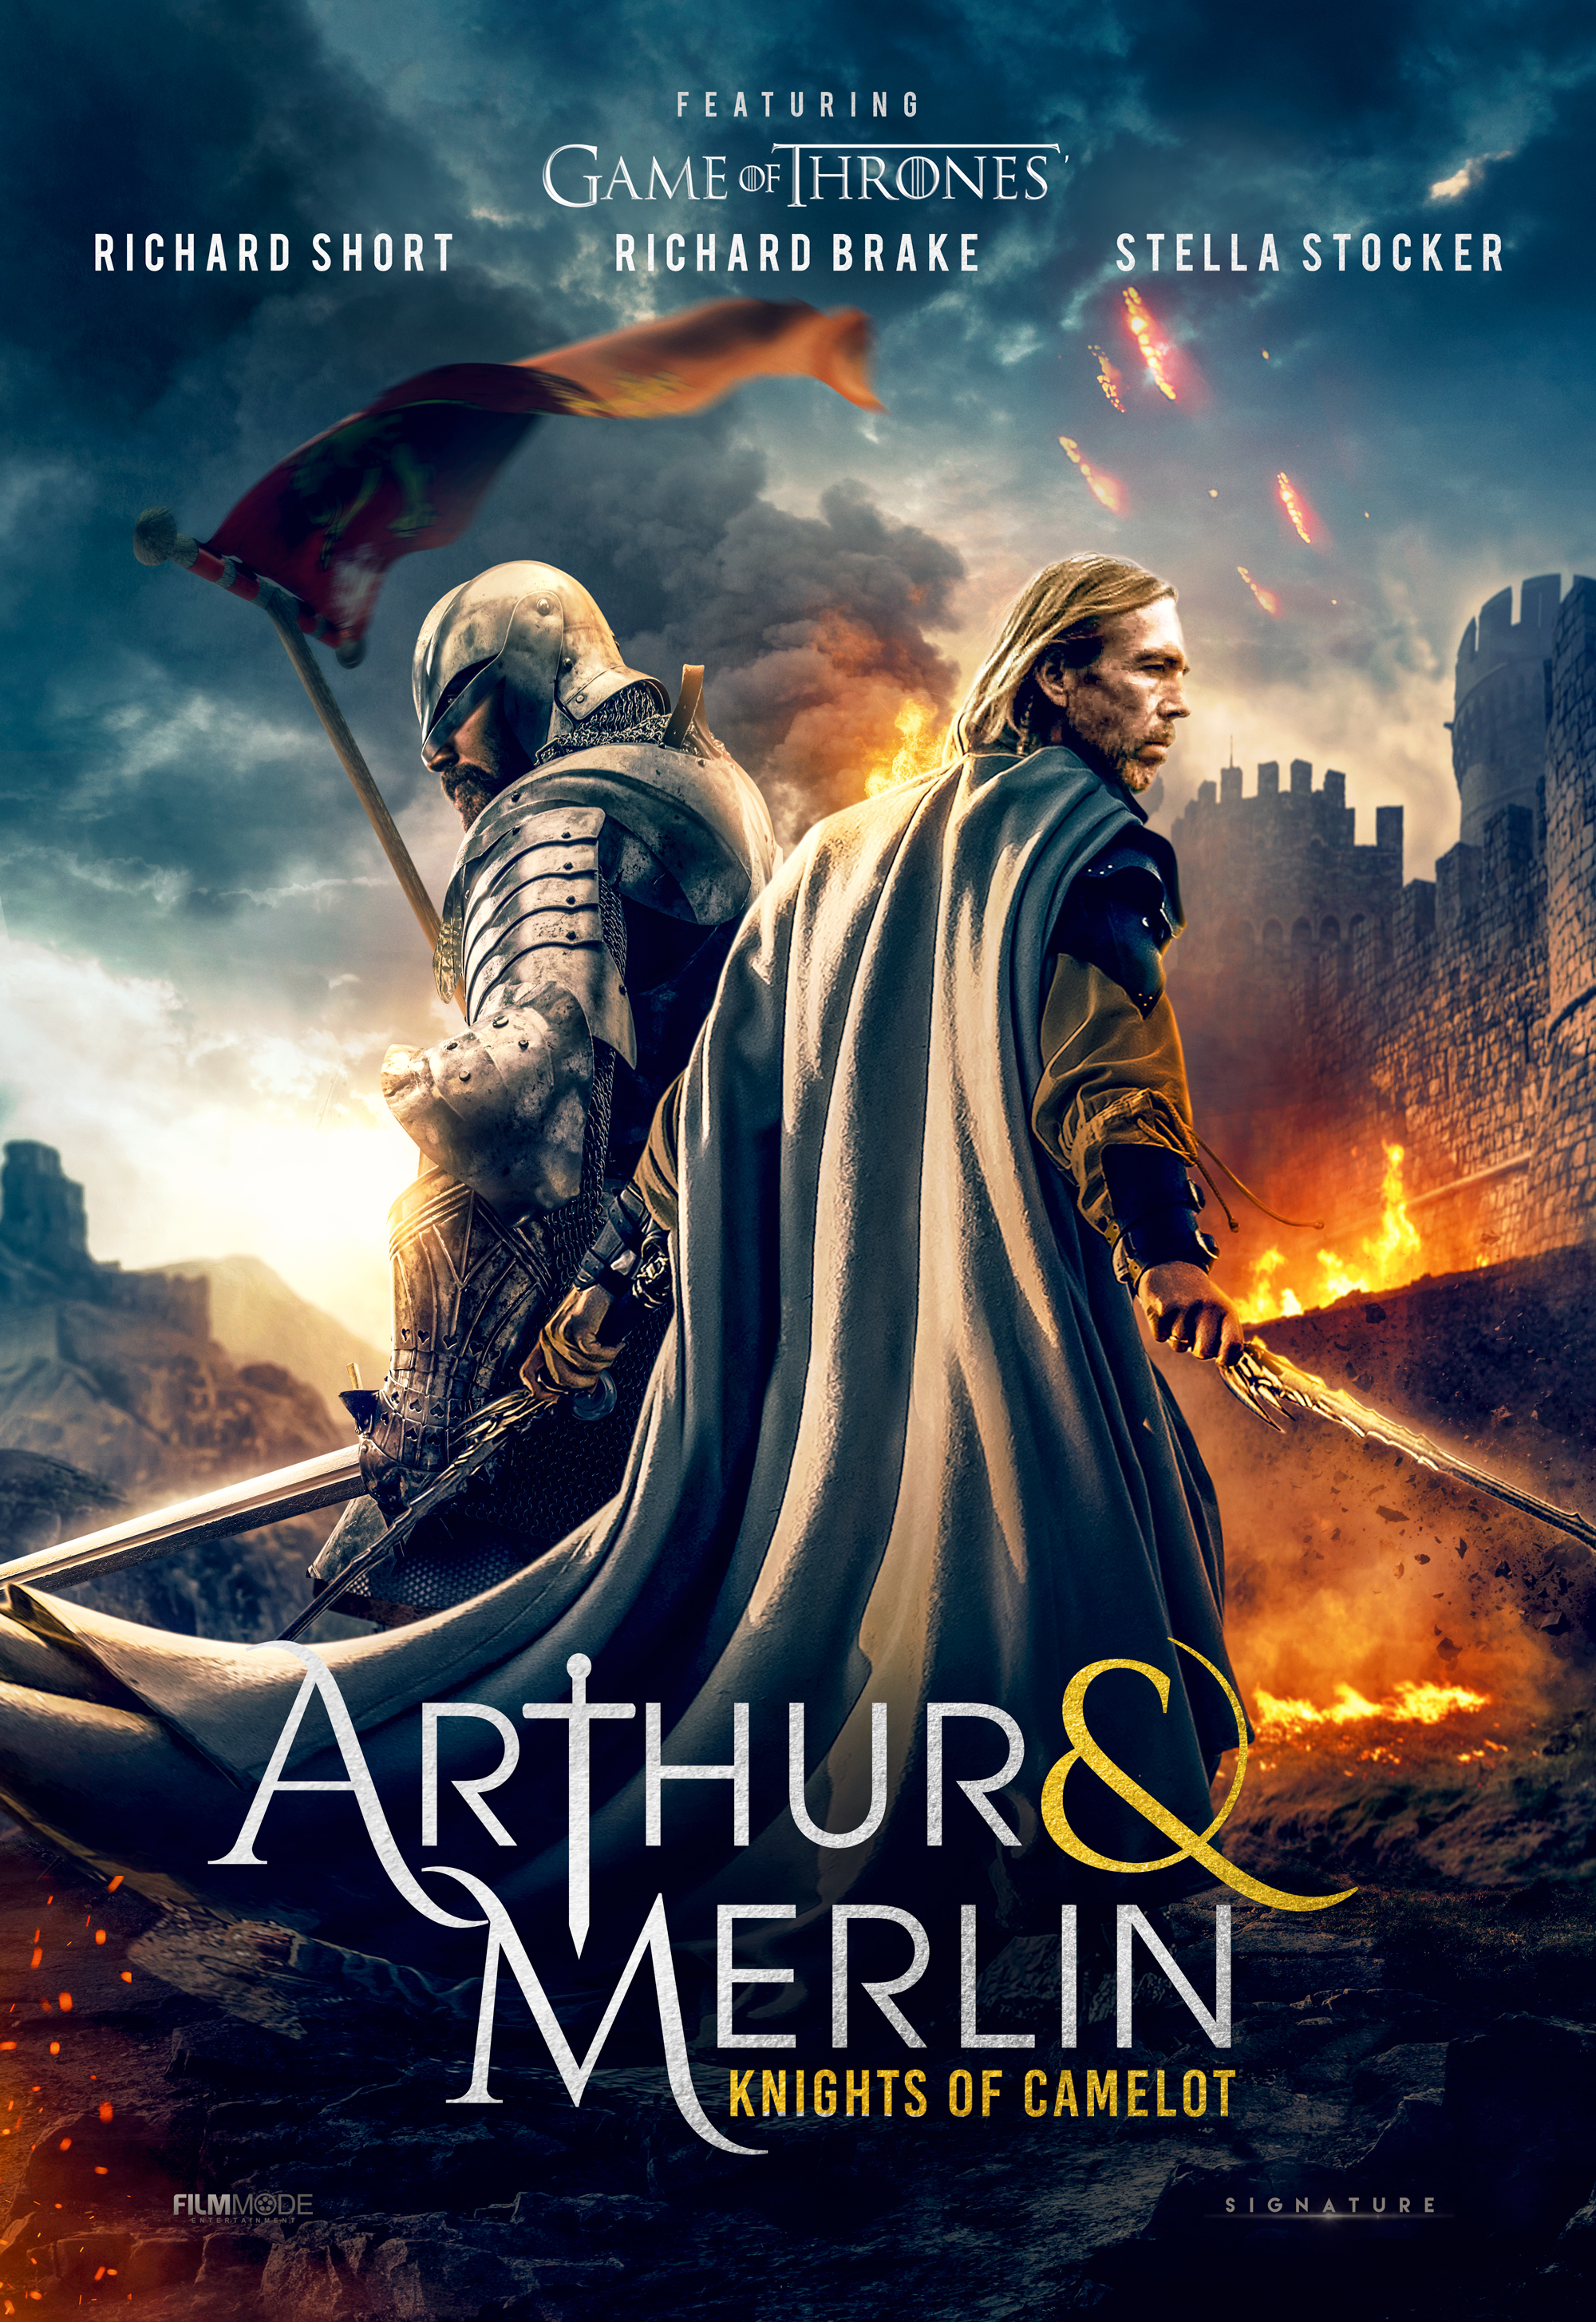 Nonton film Arthur & Merlin: Knights of Camelot layarkaca21 indoxx1 ganool online streaming terbaru